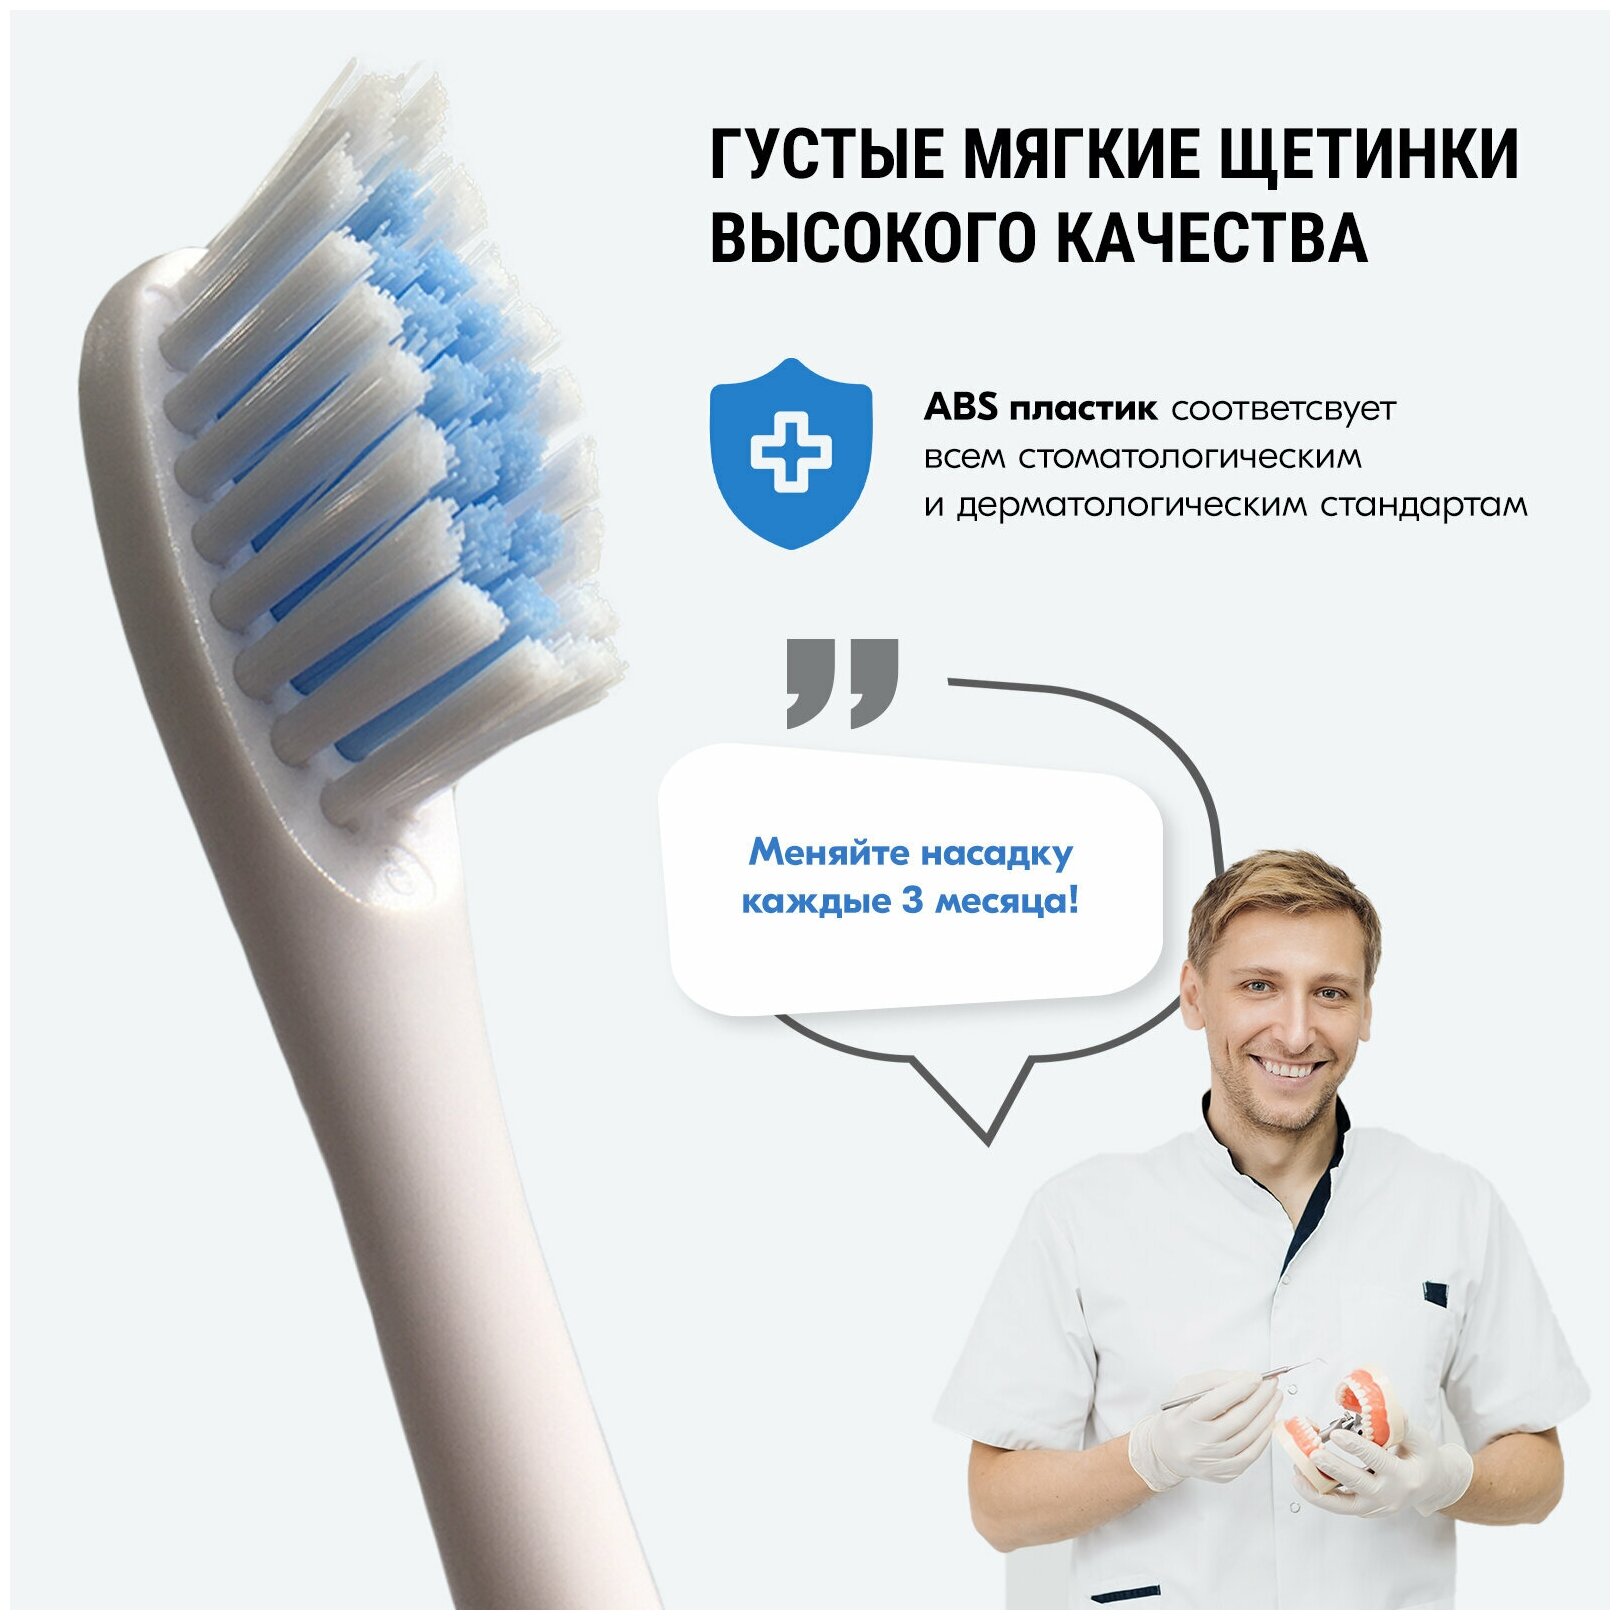 Насадка для электрической зубной щетки Evo-Beauty UltraSonic Care